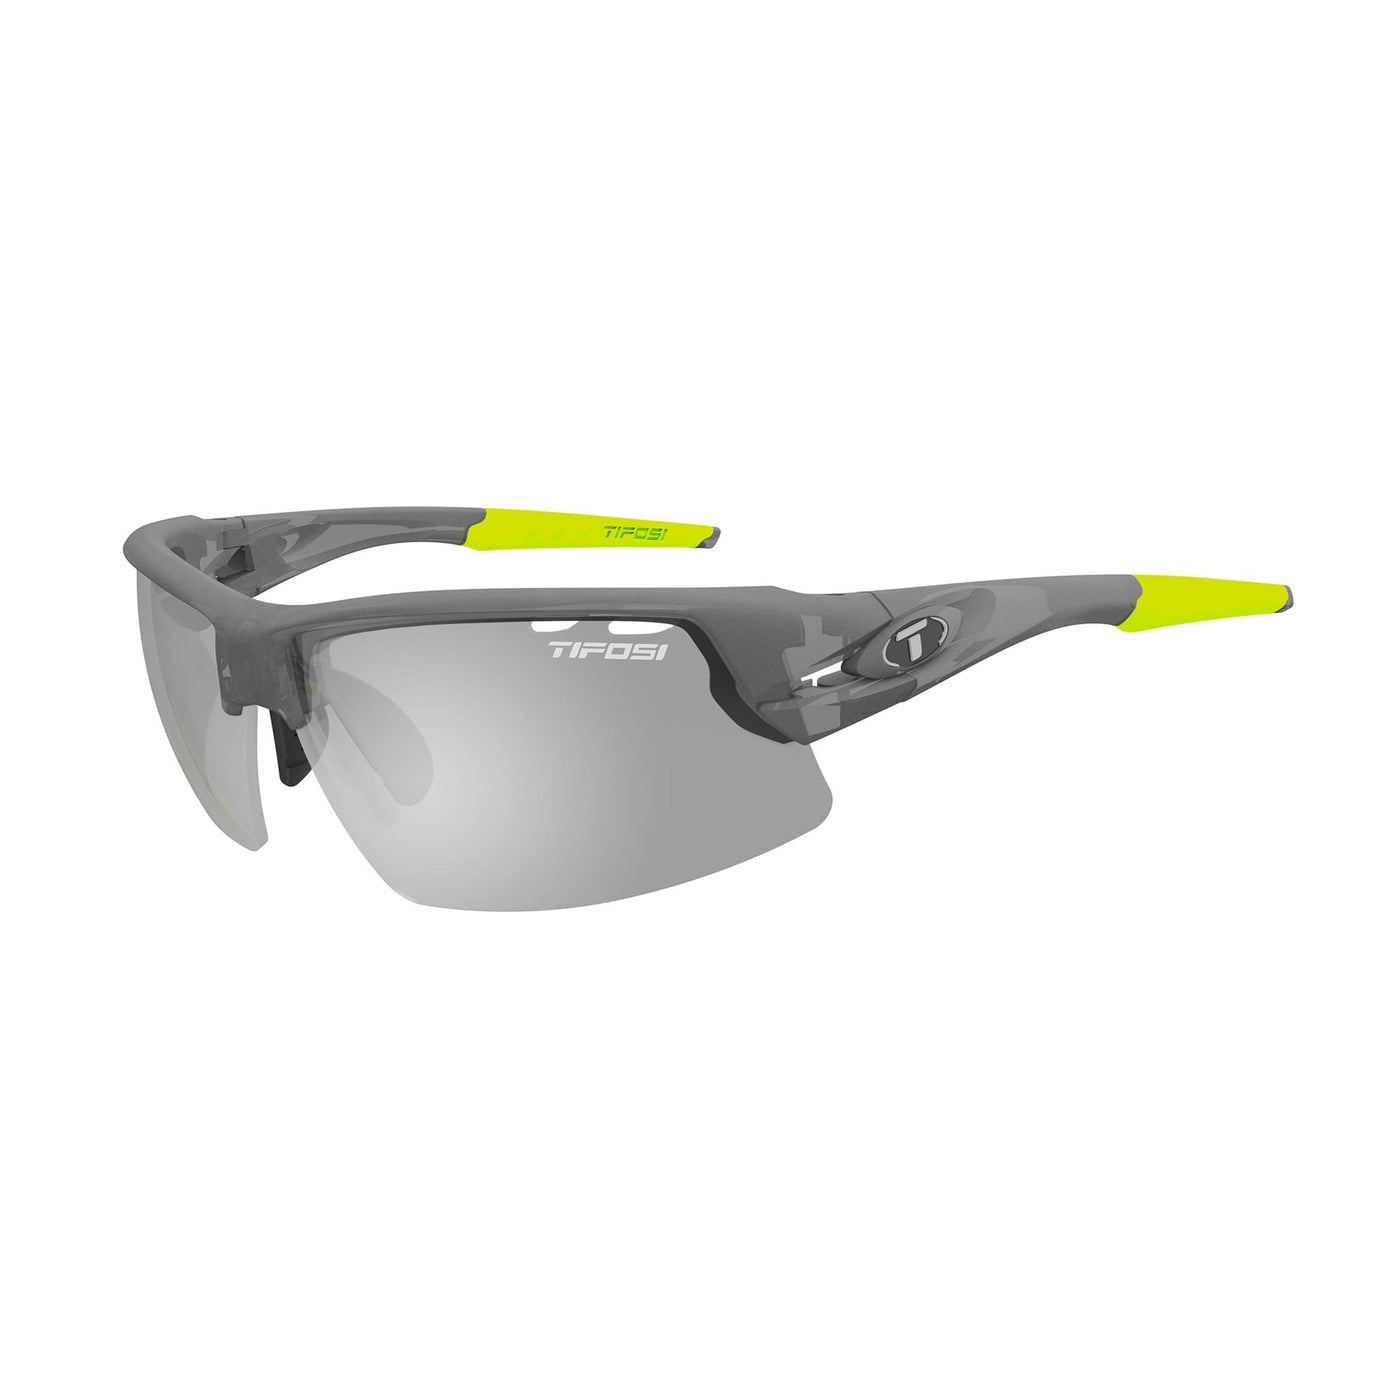 Tifosi Crit Polarized Fototec Smoke Lens Sunglasses